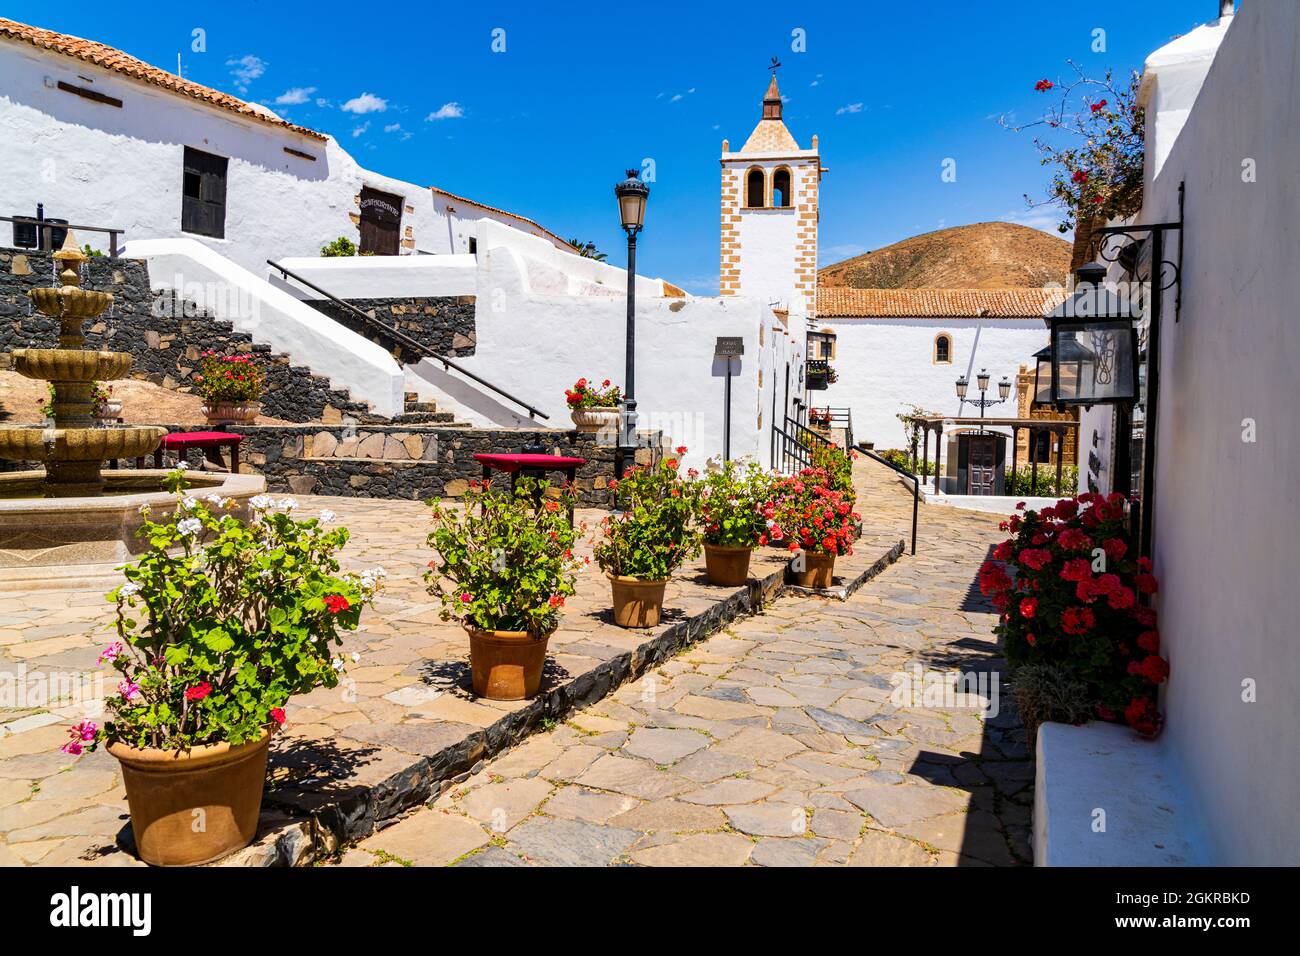 Farbenfrohe Blumen umrahmt die Santa Maria Kathedrale in der Altstadt von Betancuria, Fuerteventura, Kanarische Inseln, Spanien, Atlantik, Europa Stockfoto